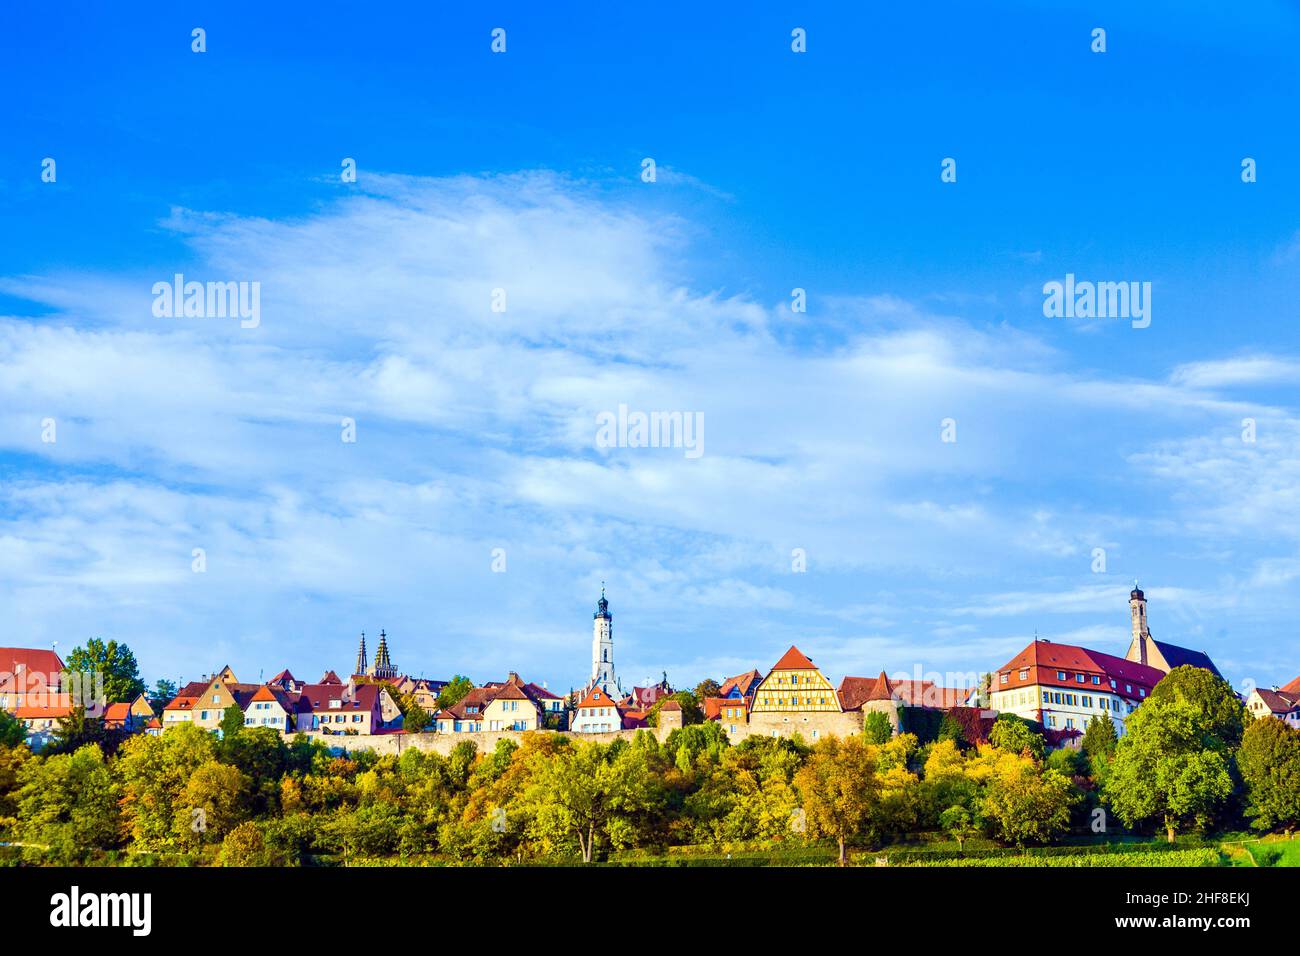 Rothenburg ob der Tauber, alte berühmte Stadt aus dem Mittelalter, vom romantischen Tal der Tauber aus gesehen Stockfoto